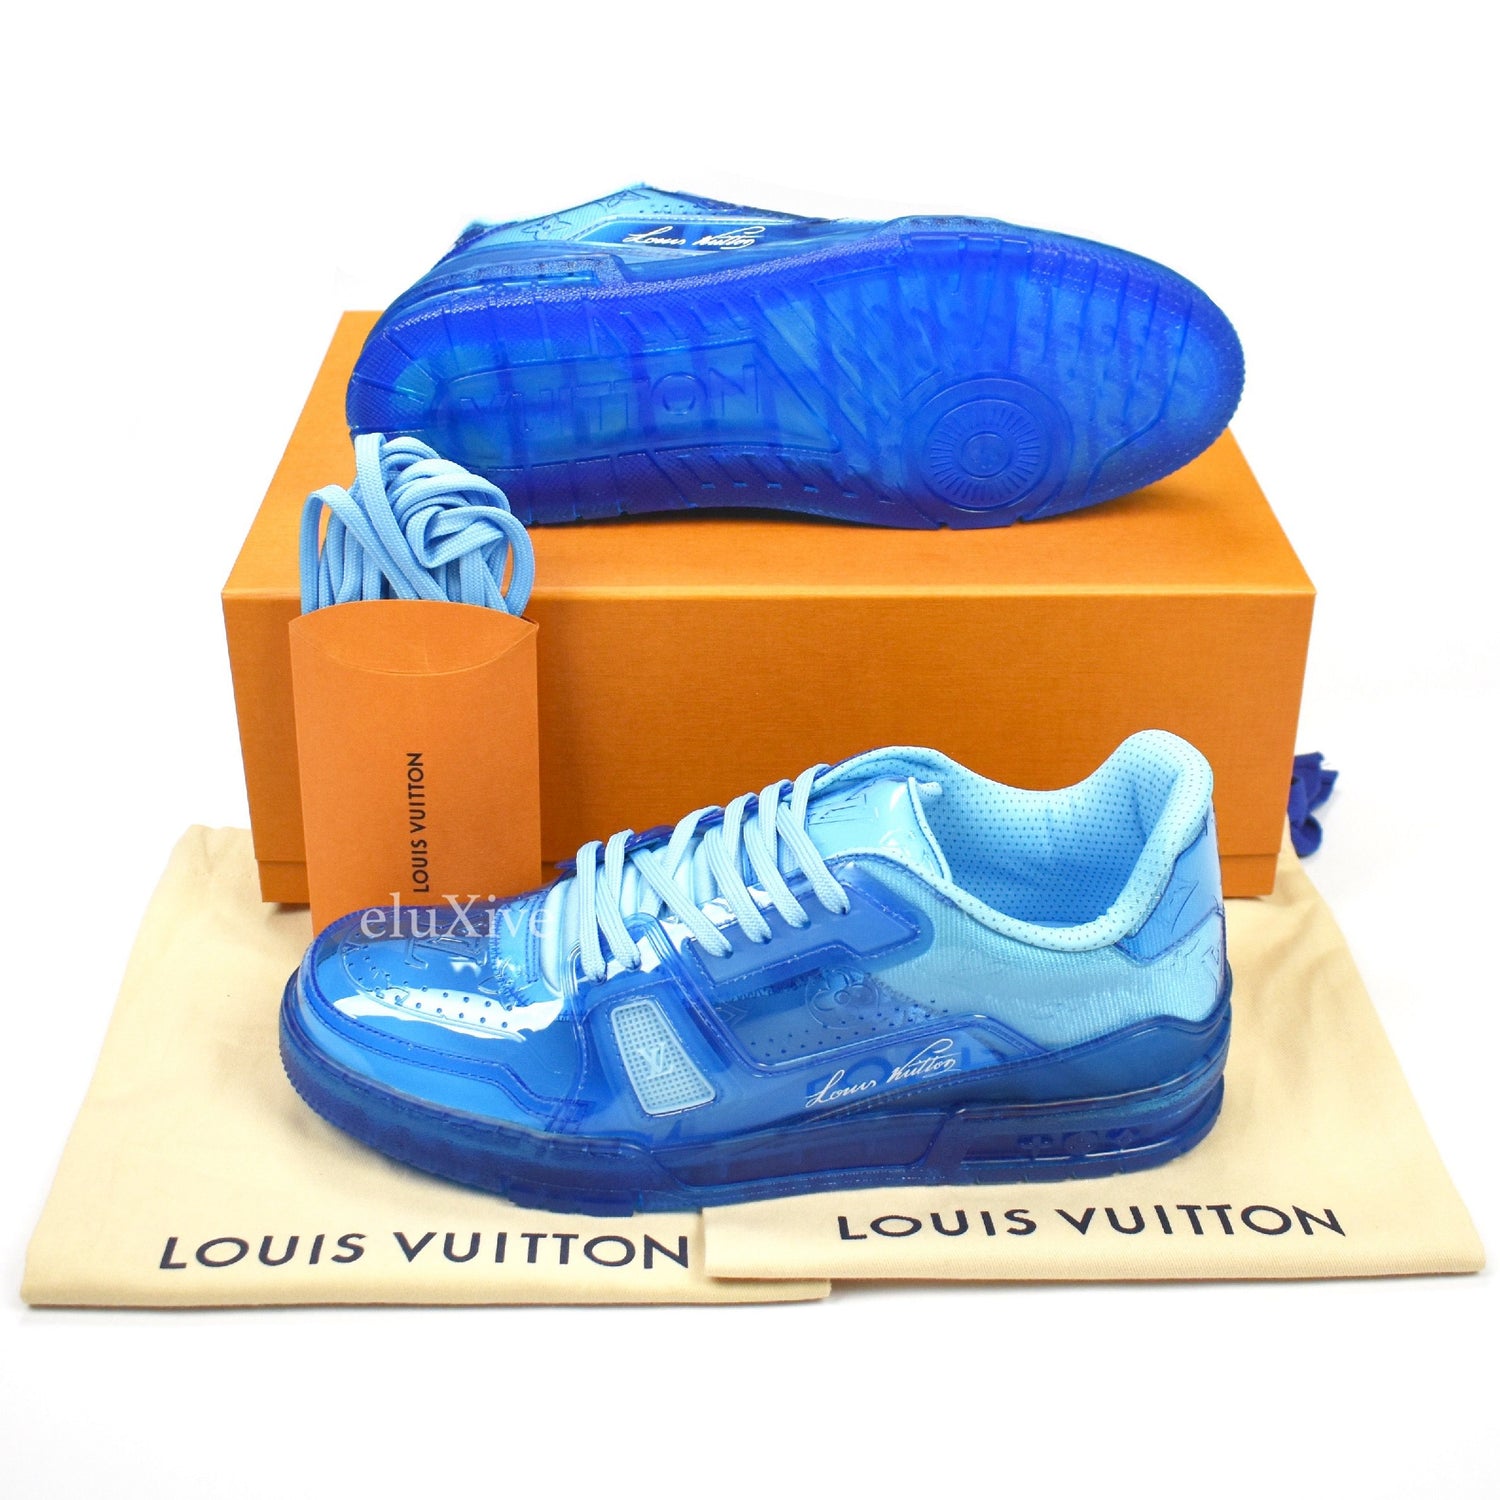 Louis Vuitton Trainer Blue Men's - 1A8KK6 - US